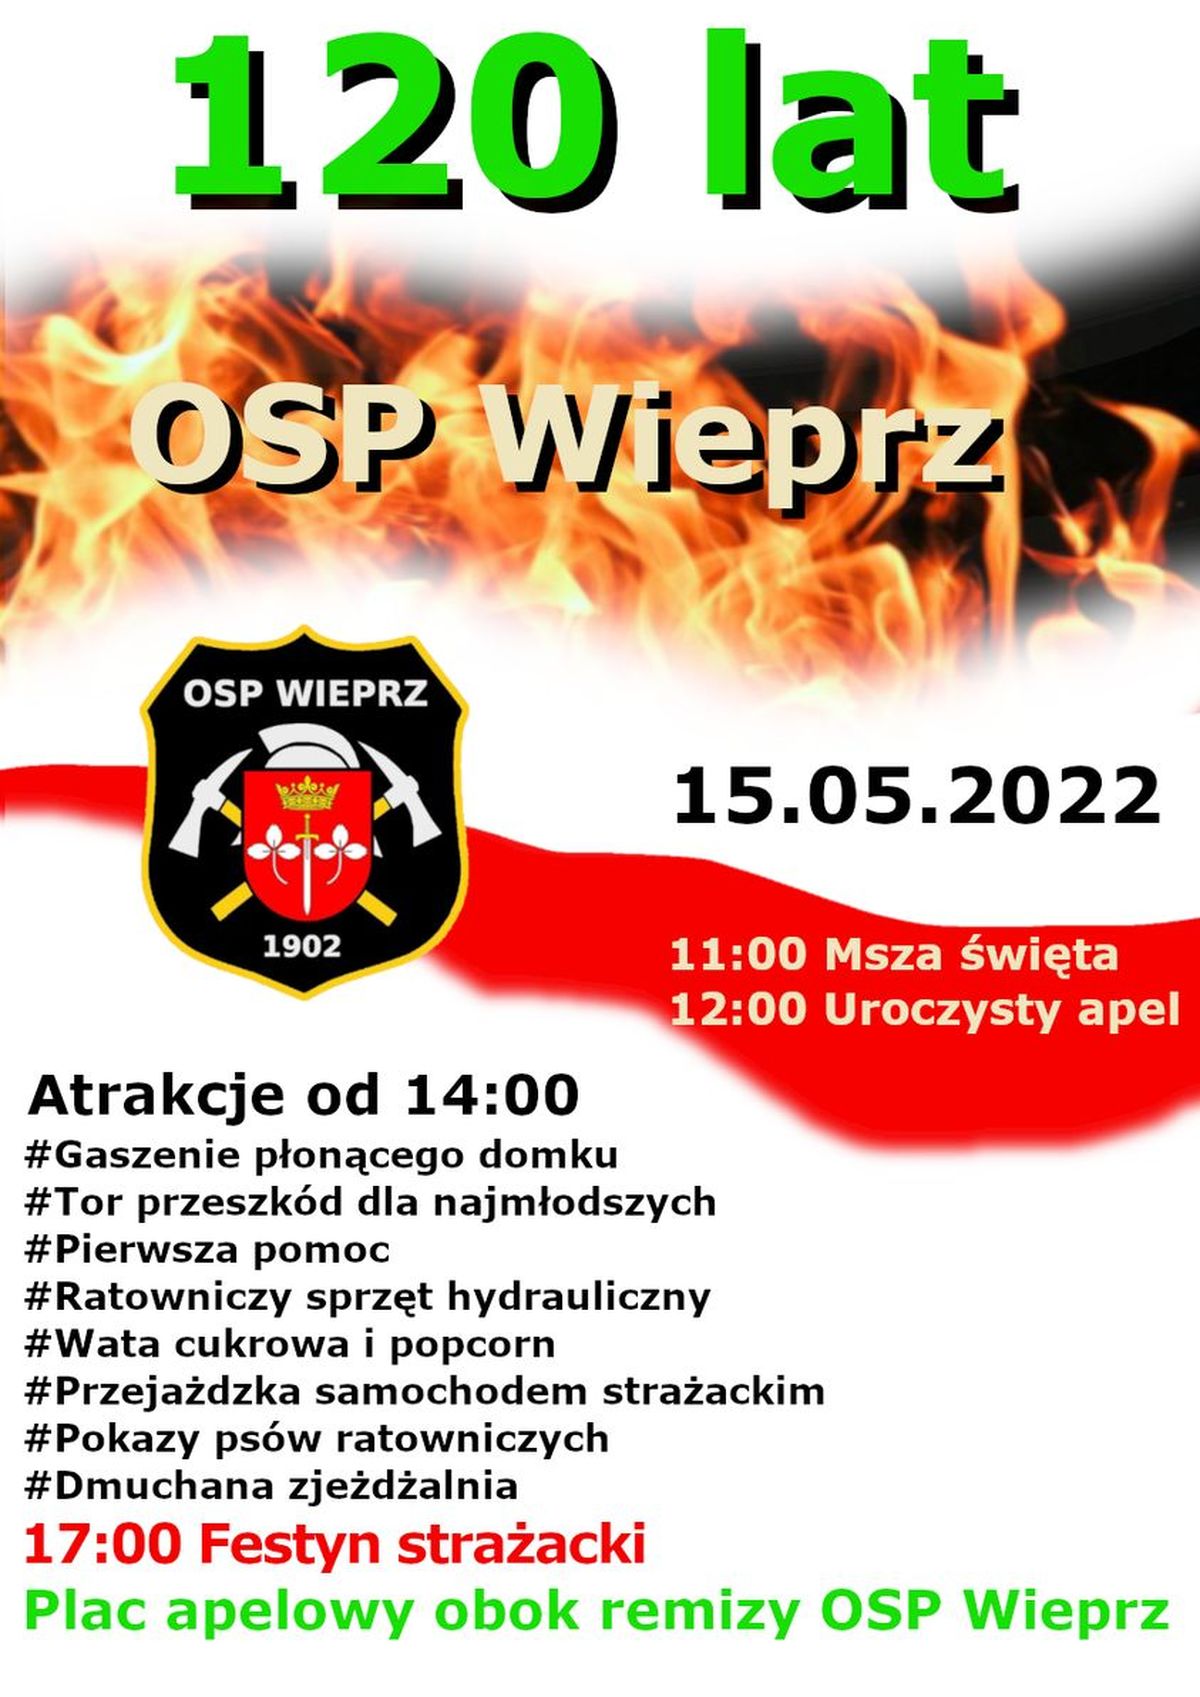 OSP Wieprz świętuje 120-lecie. Atrakcje dla mieszkańców